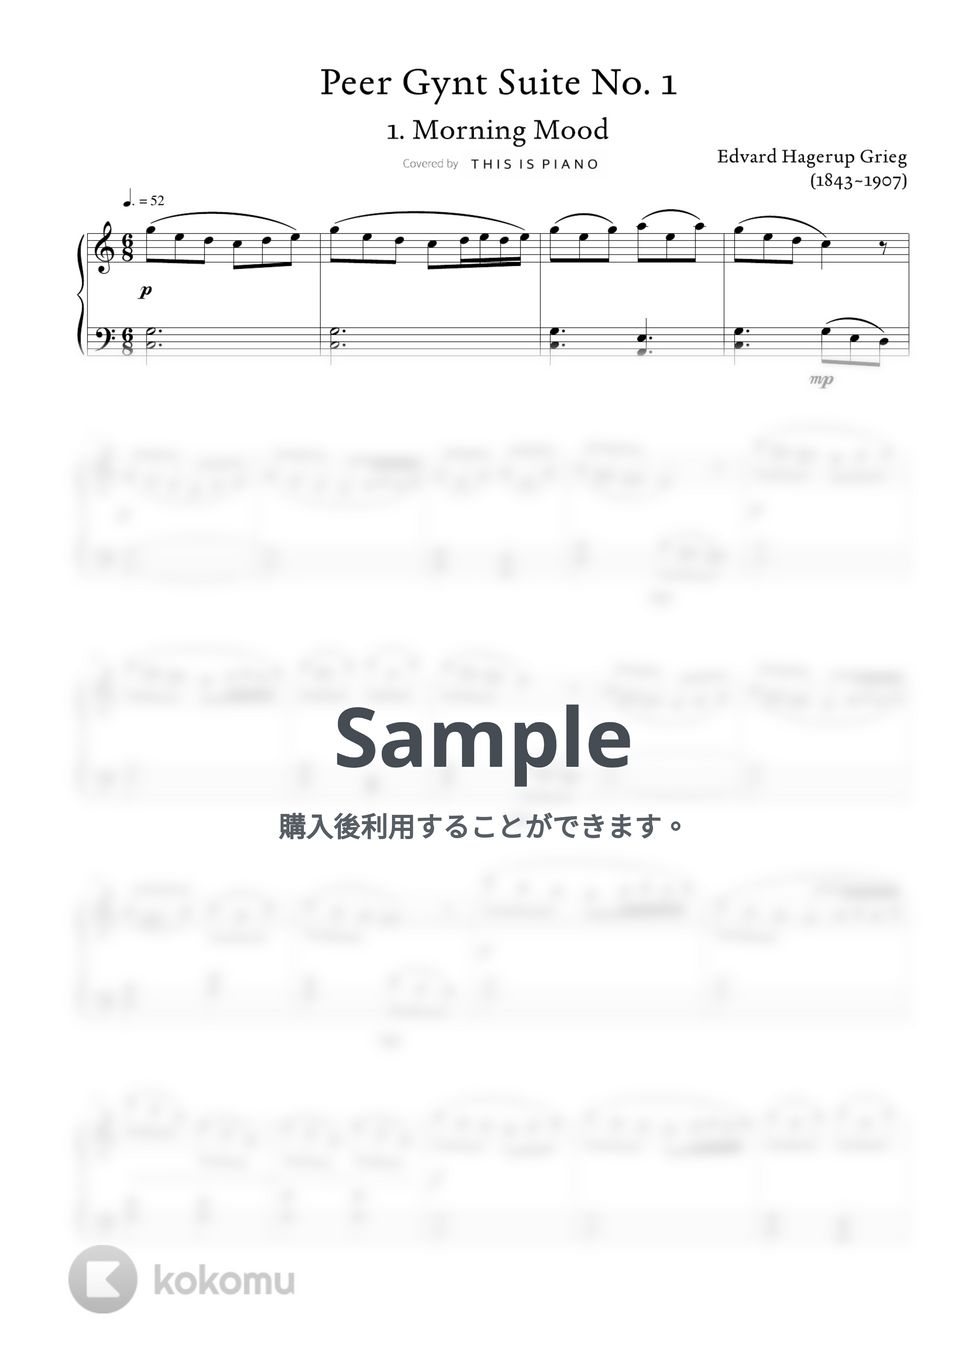 グリーグ - ペール・ギュント1番 (朝の気分) (初級バージョン / 聞いたことはあるけど名前は知らないクラシック (1)) by THIS IS PIANO